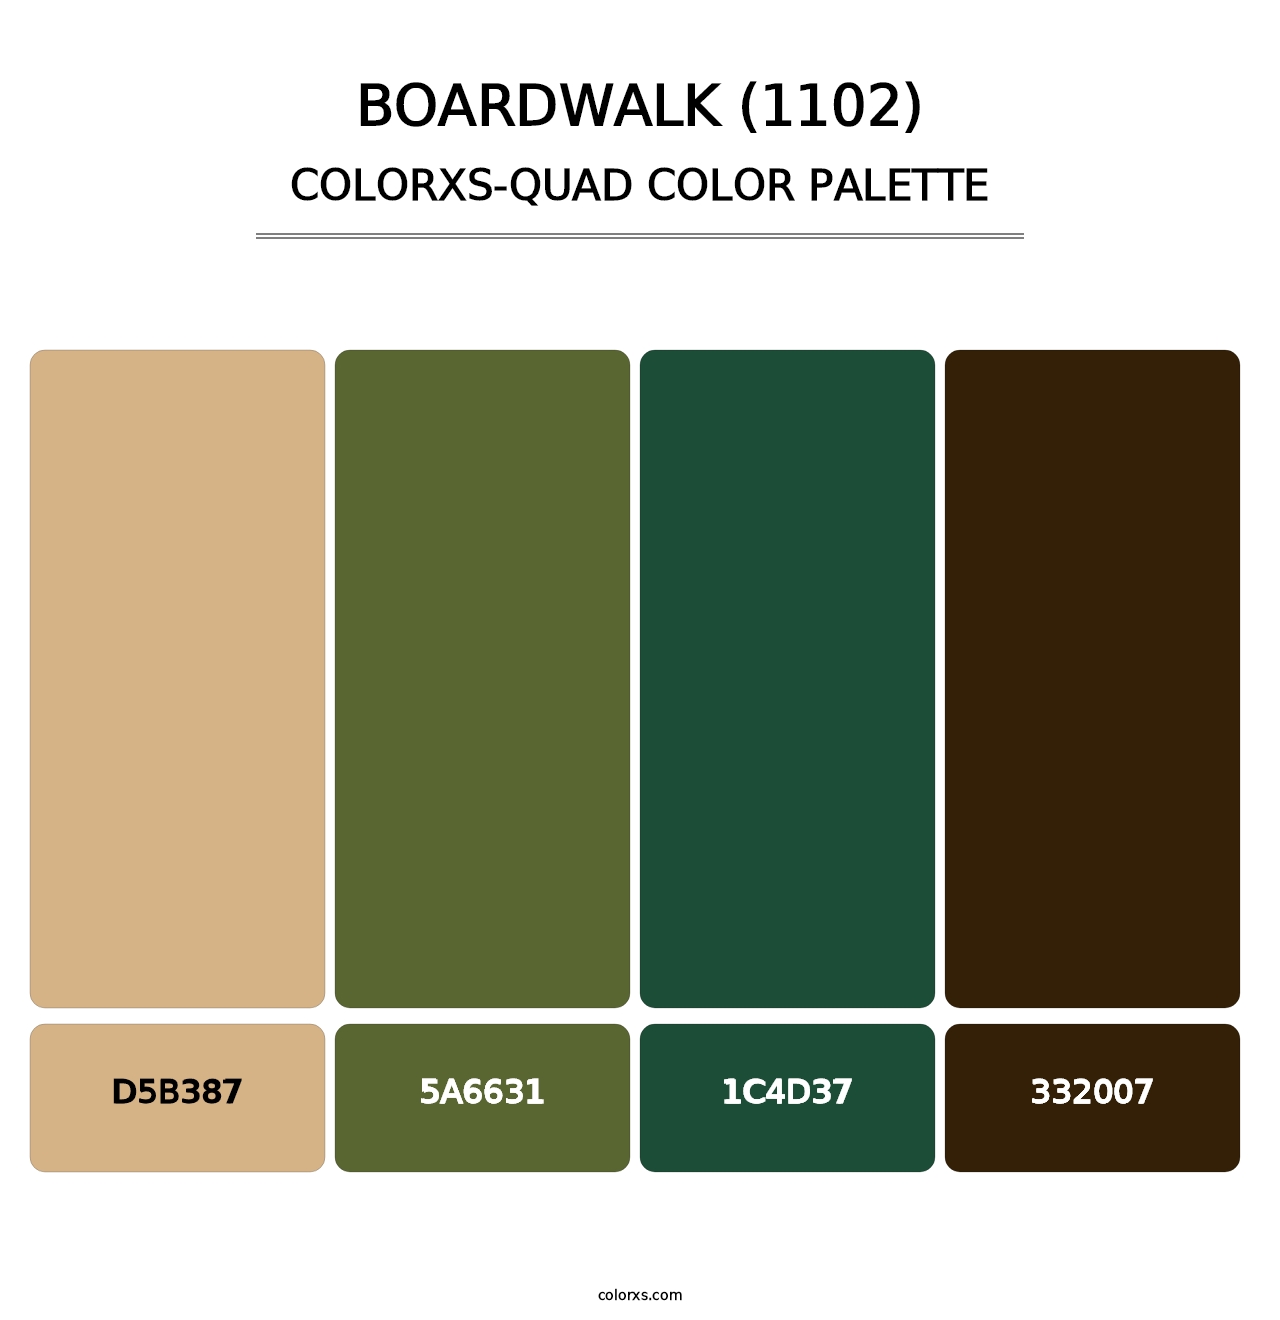 Boardwalk (1102) - Colorxs Quad Palette